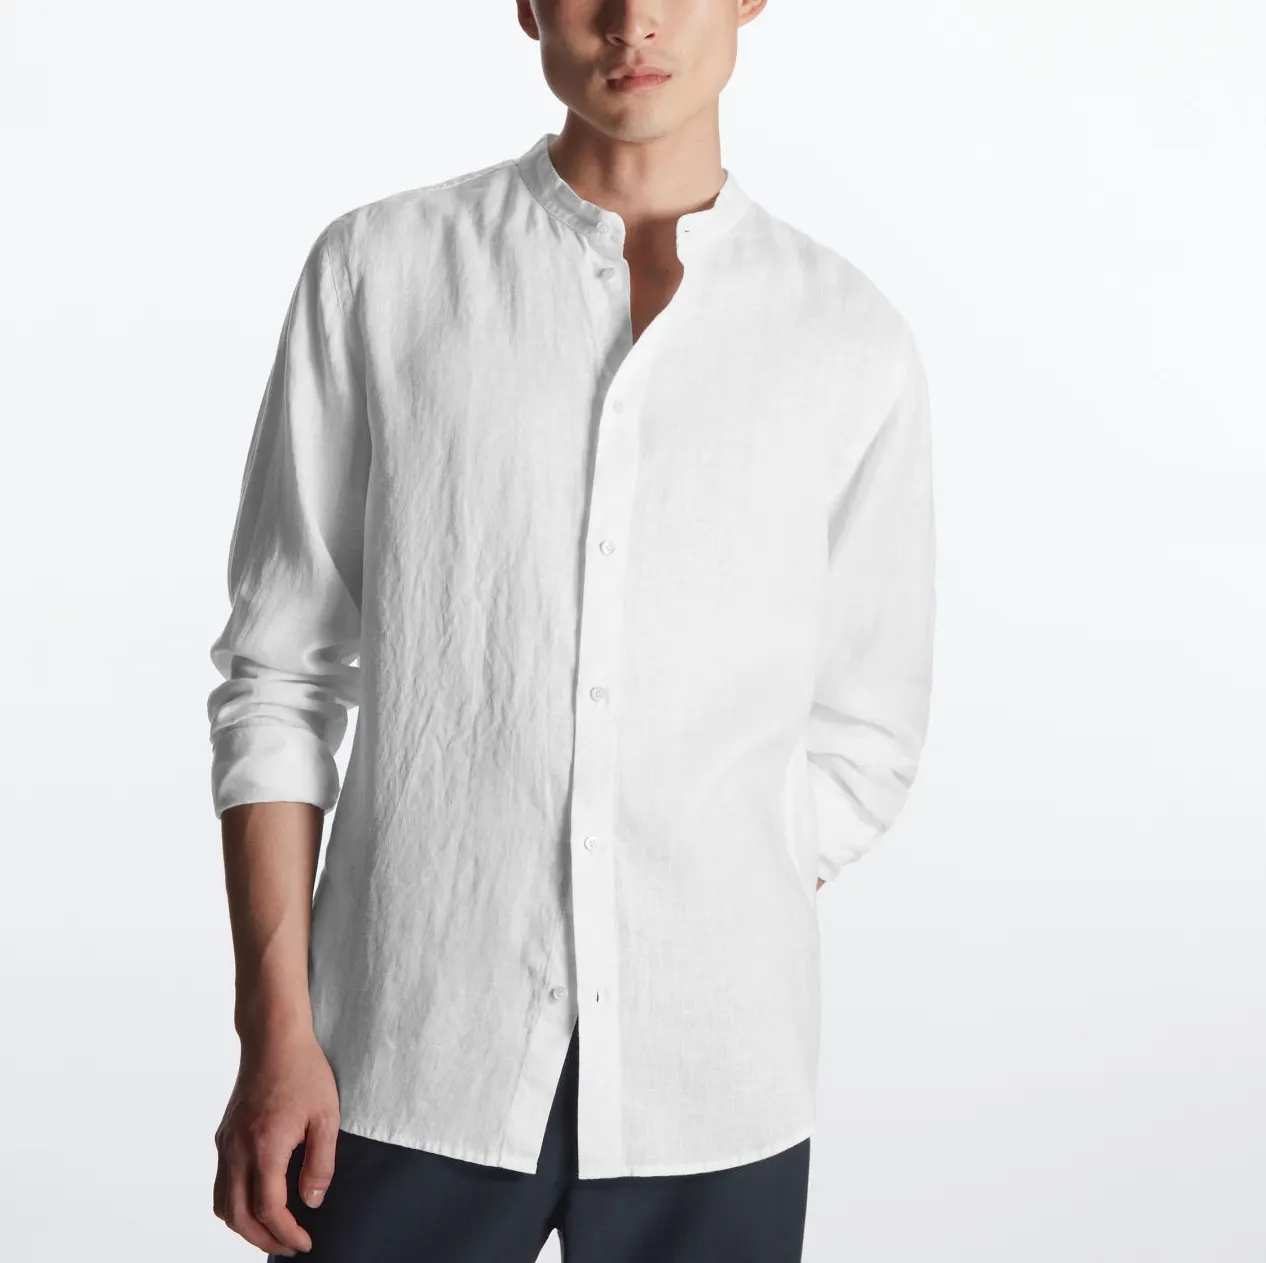 Camicia da uomo in lino italiano 100% all'ingrosso chemise homme camicia in lino di canapa di cotone ecologica traspirante bianca personalizzata per uomo